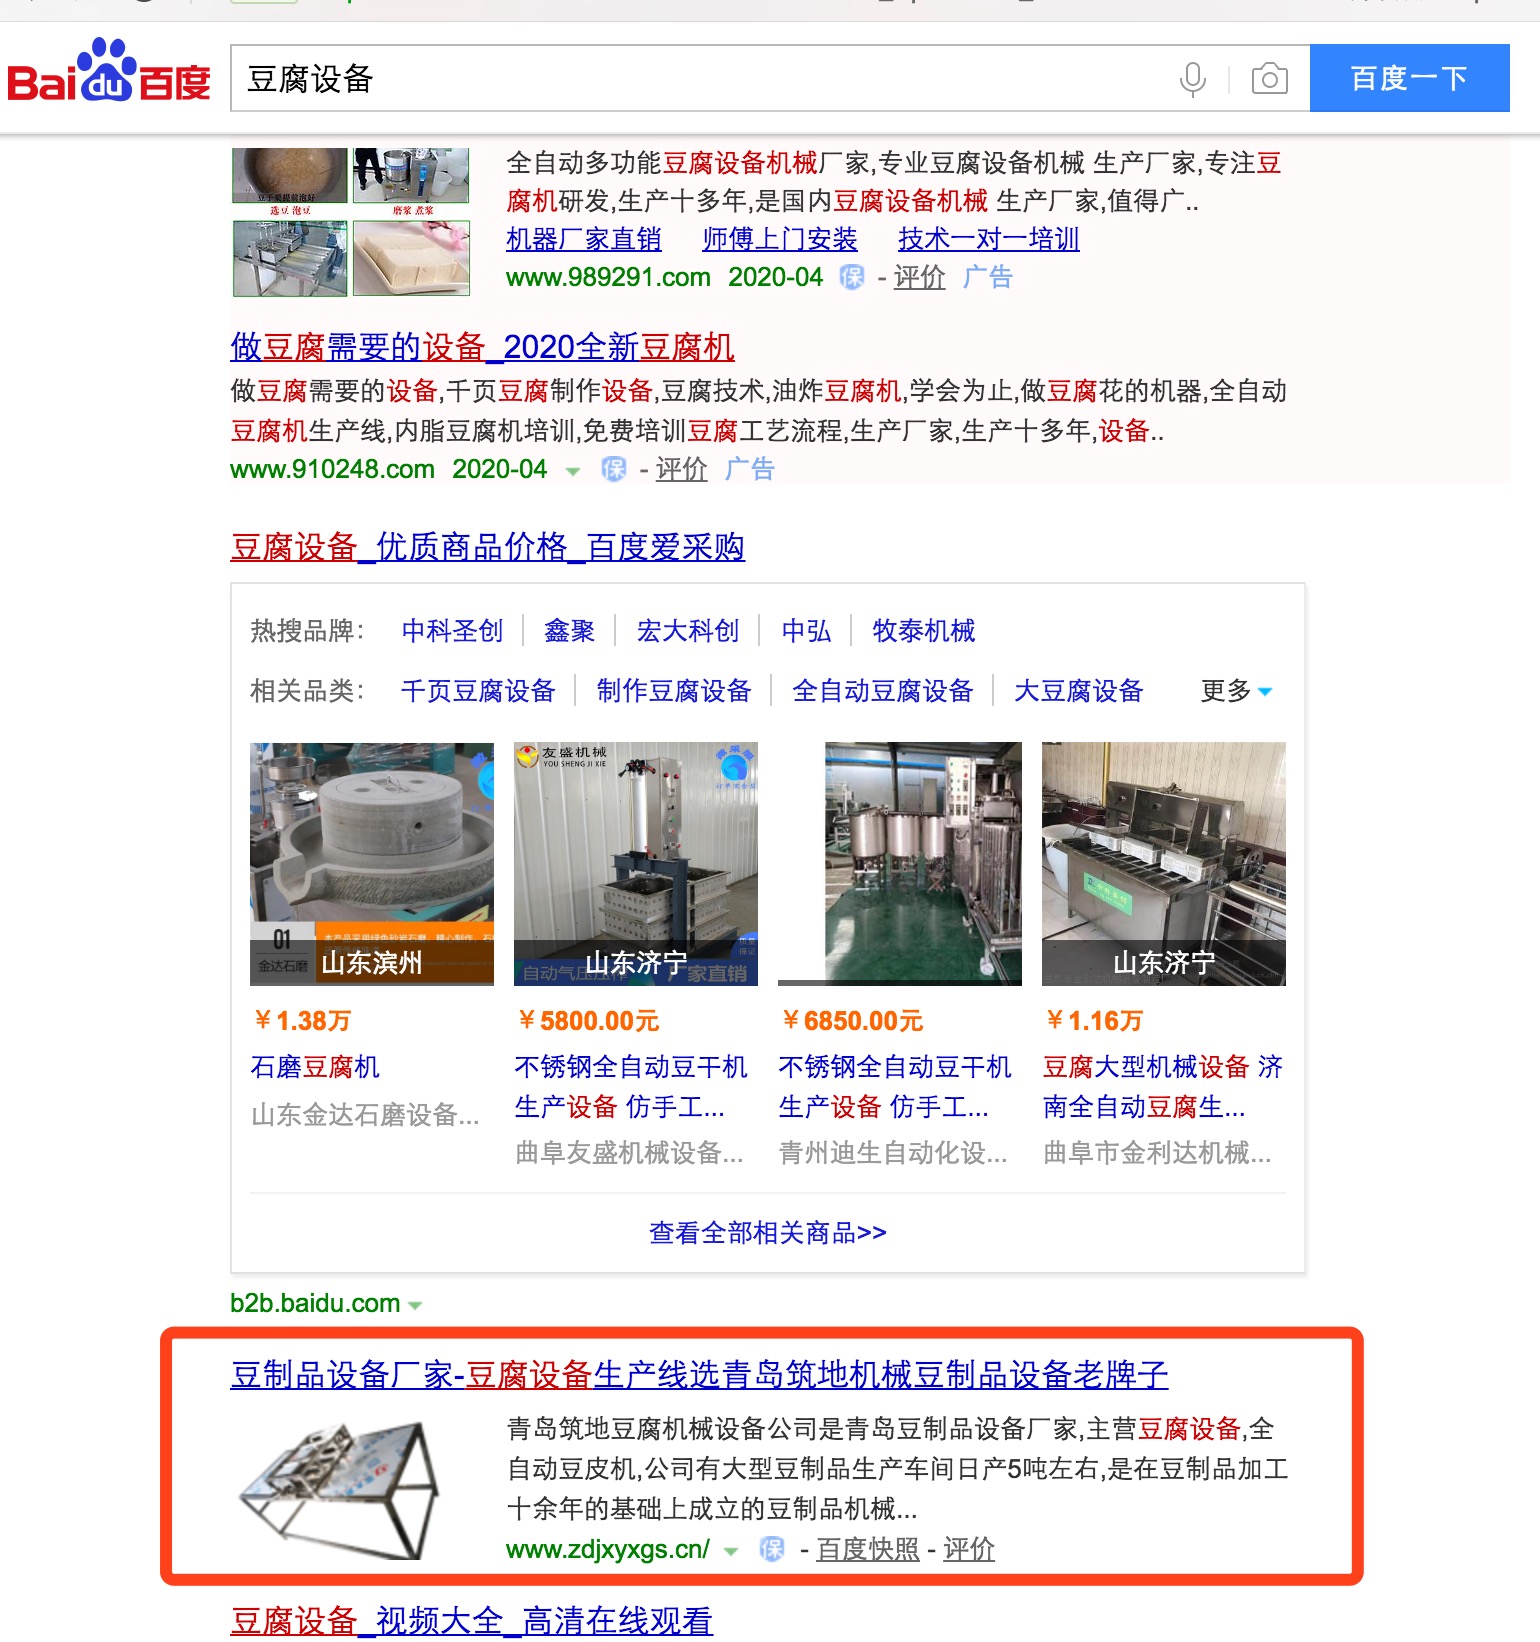 豆腐设备网站多词在异地搜索首页排名